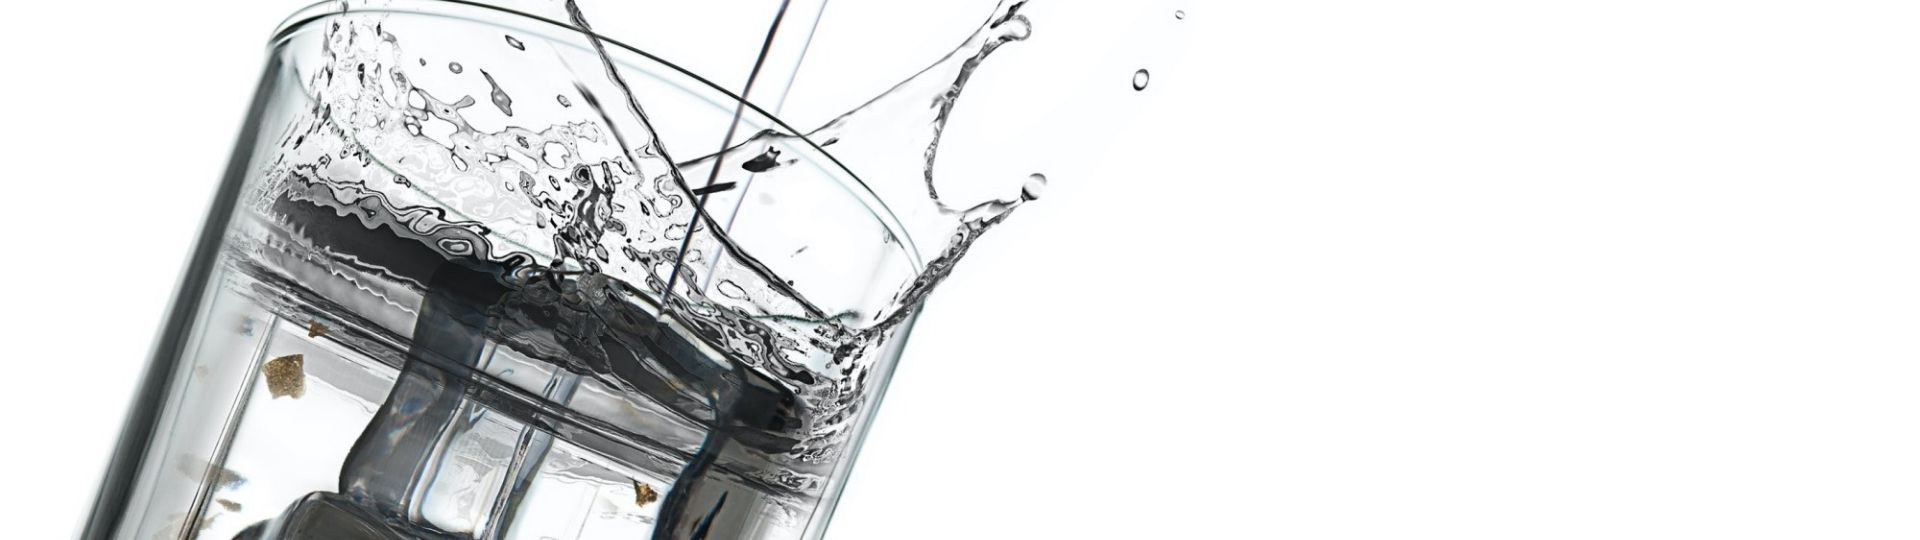 vodka in a glass | Liquori e distillati senza glutine | foto andrey ilkevich unsplash